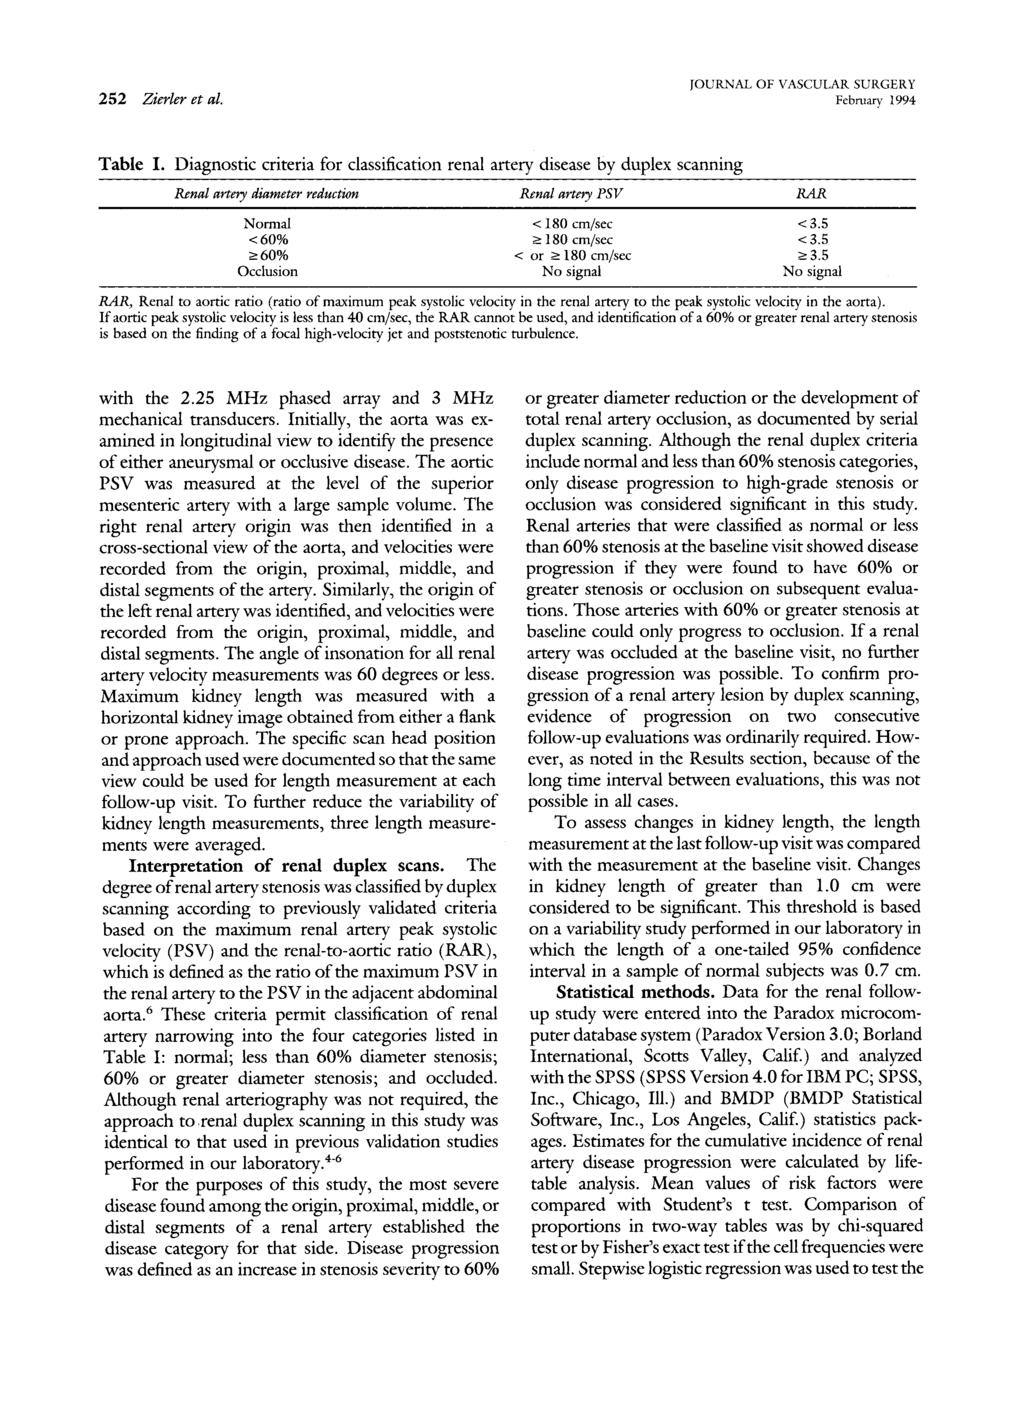 252 Zierter et at. JOURNAL OF VASCULAR SURGERY February 1994 Table I.